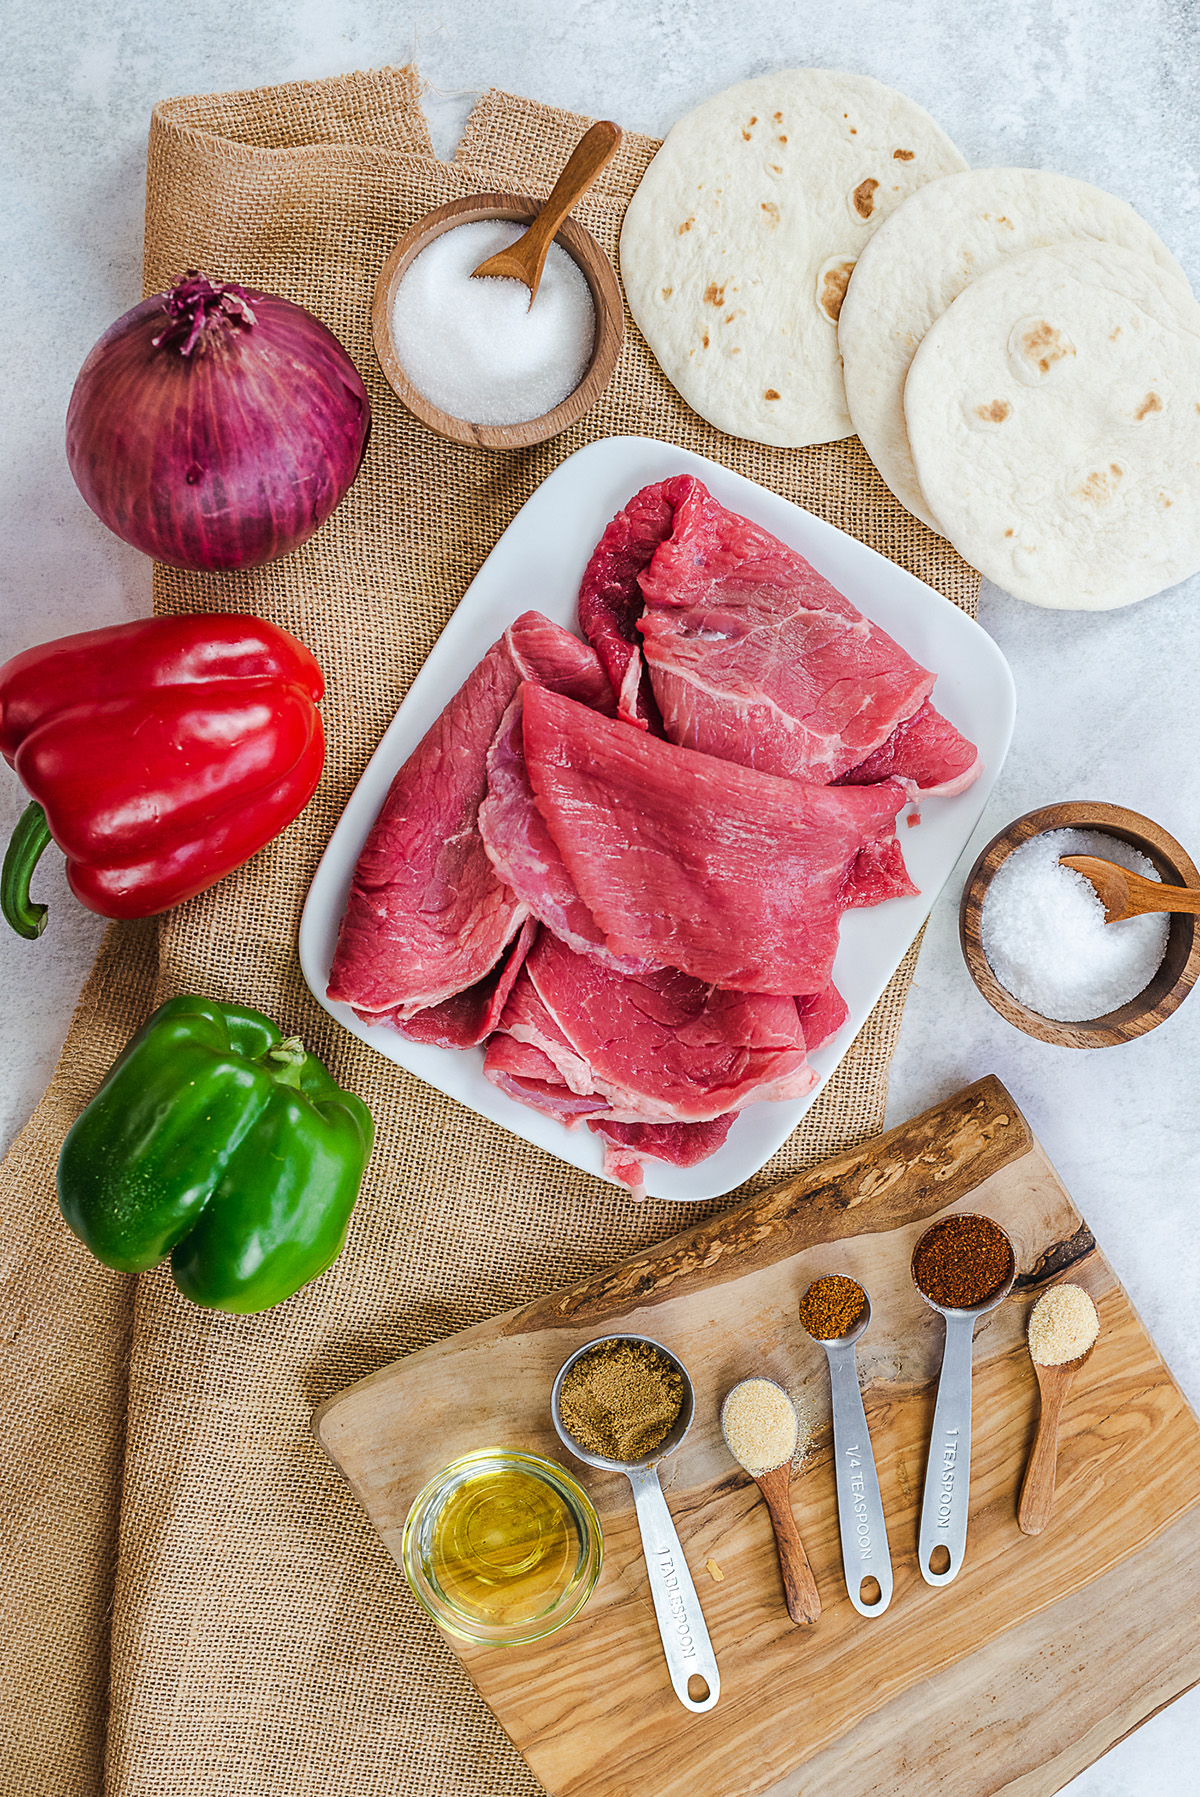 Ingredients for a steak fajita spread on a countertop.